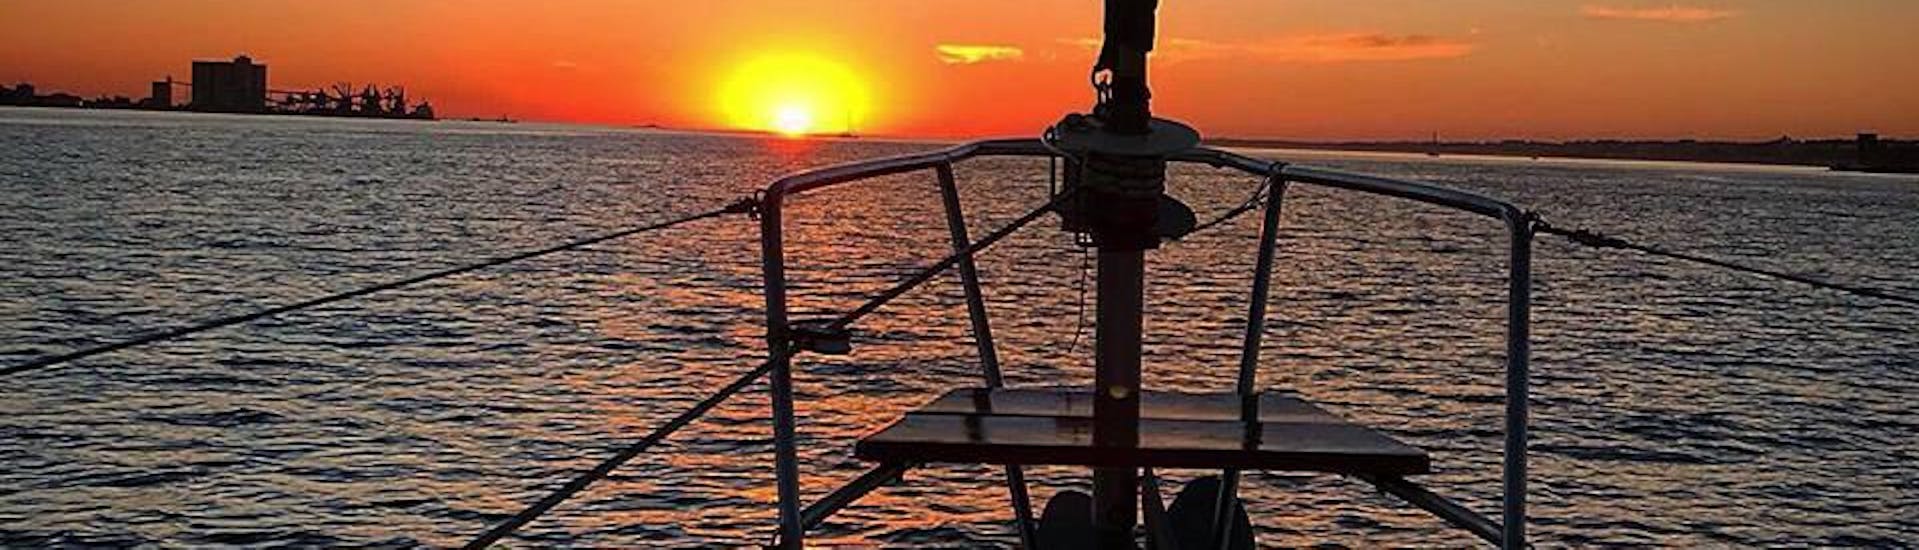 Private Segelbootstour auf dem Tejo bei Sonnenuntergang.